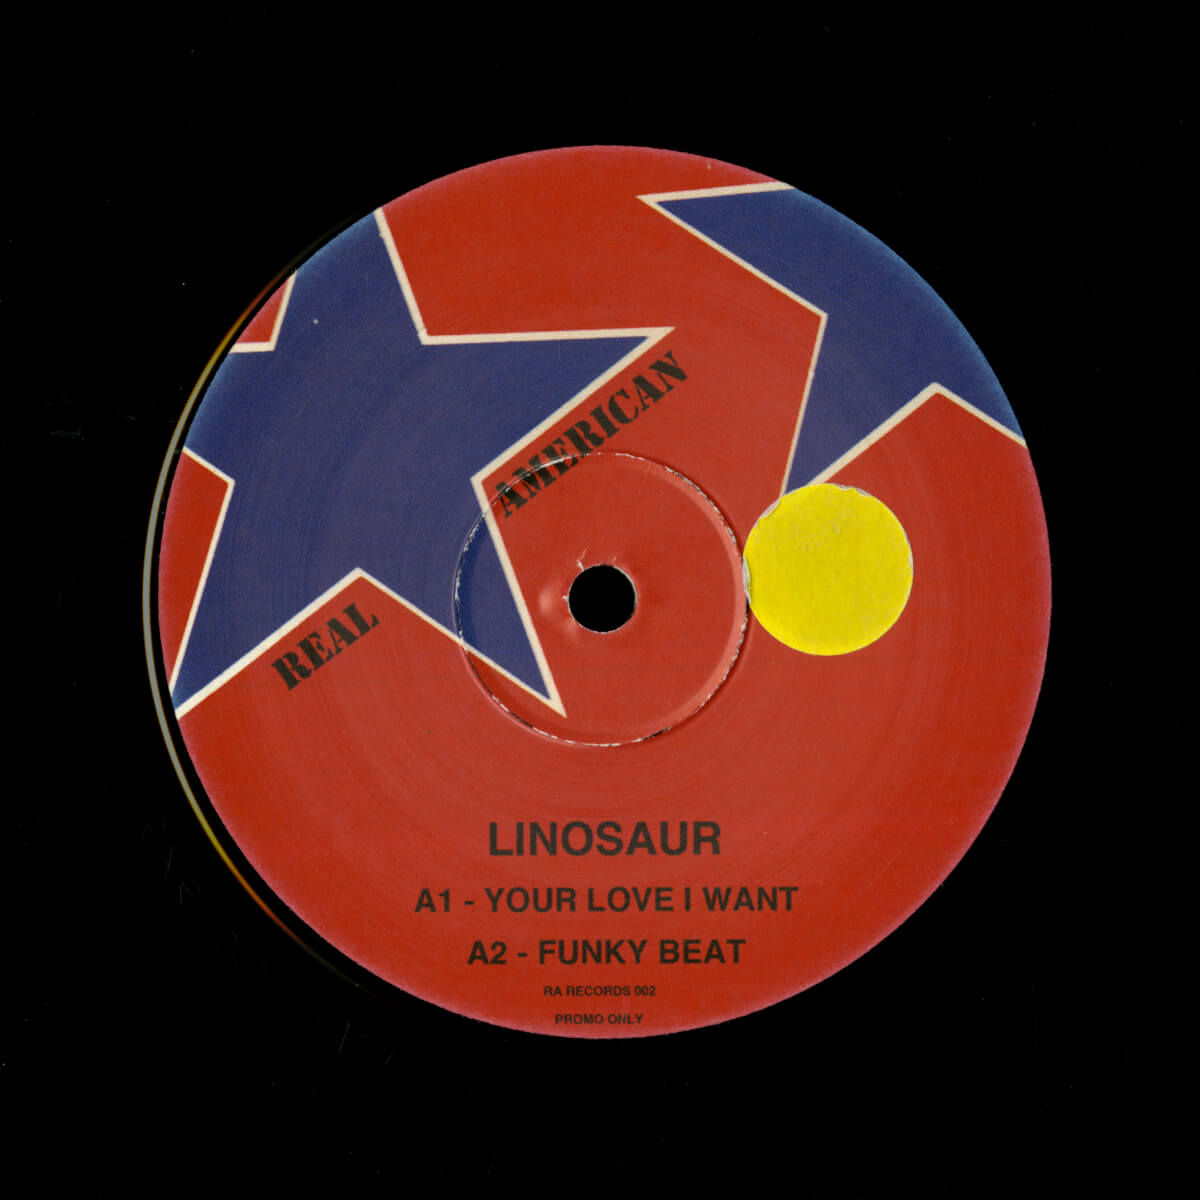 Linosaur – The Linosaur EP